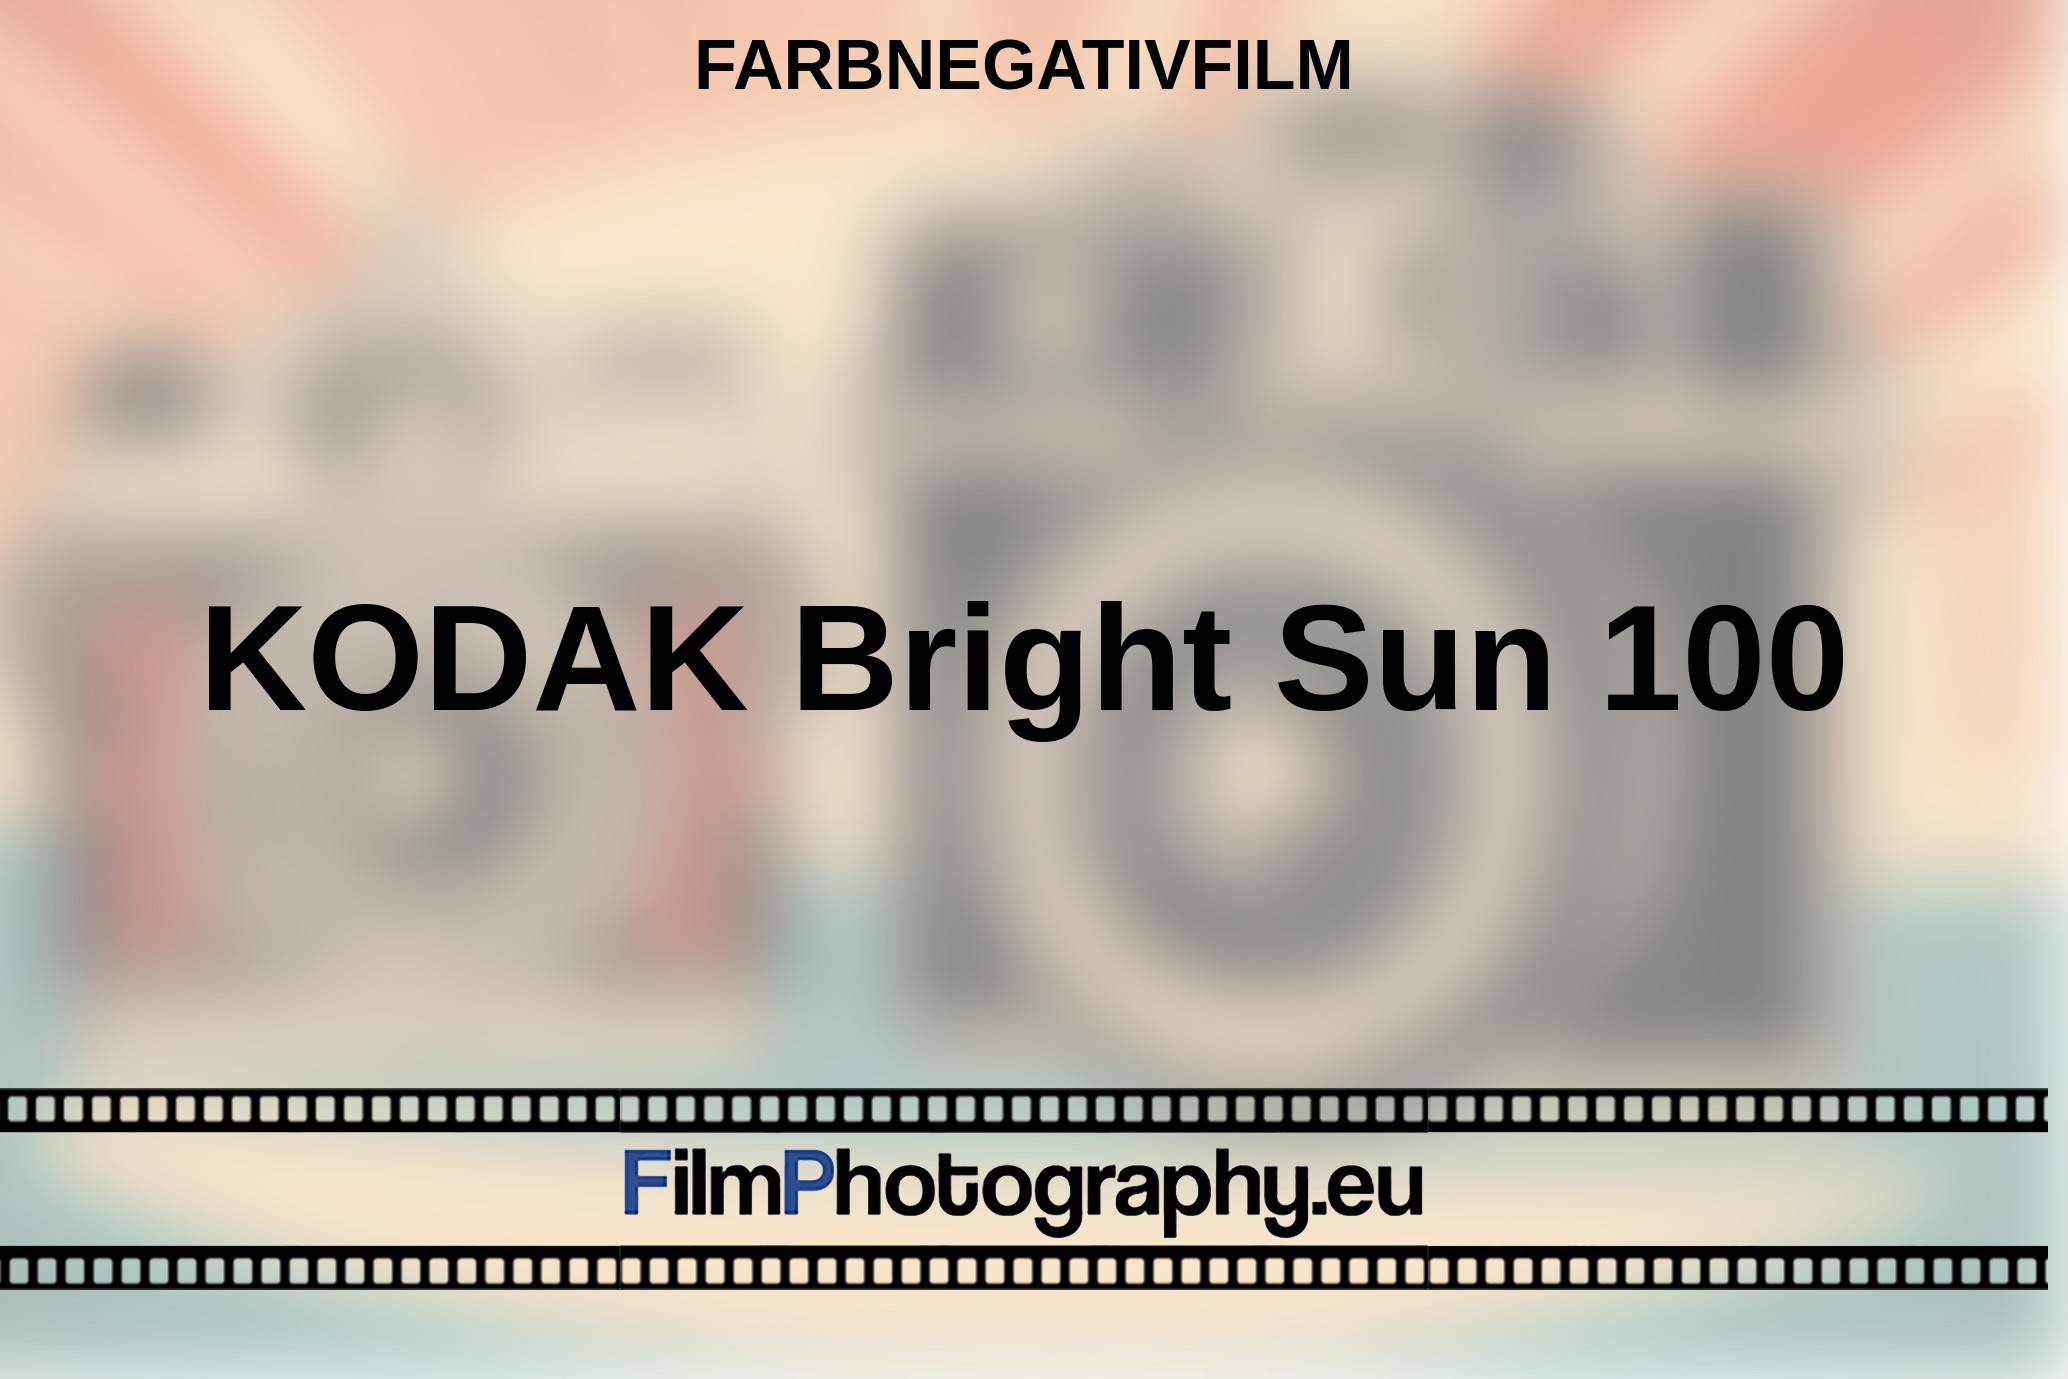 KODAK-Bright-Sun-100-Farbnegativfilm-bnv.jpg